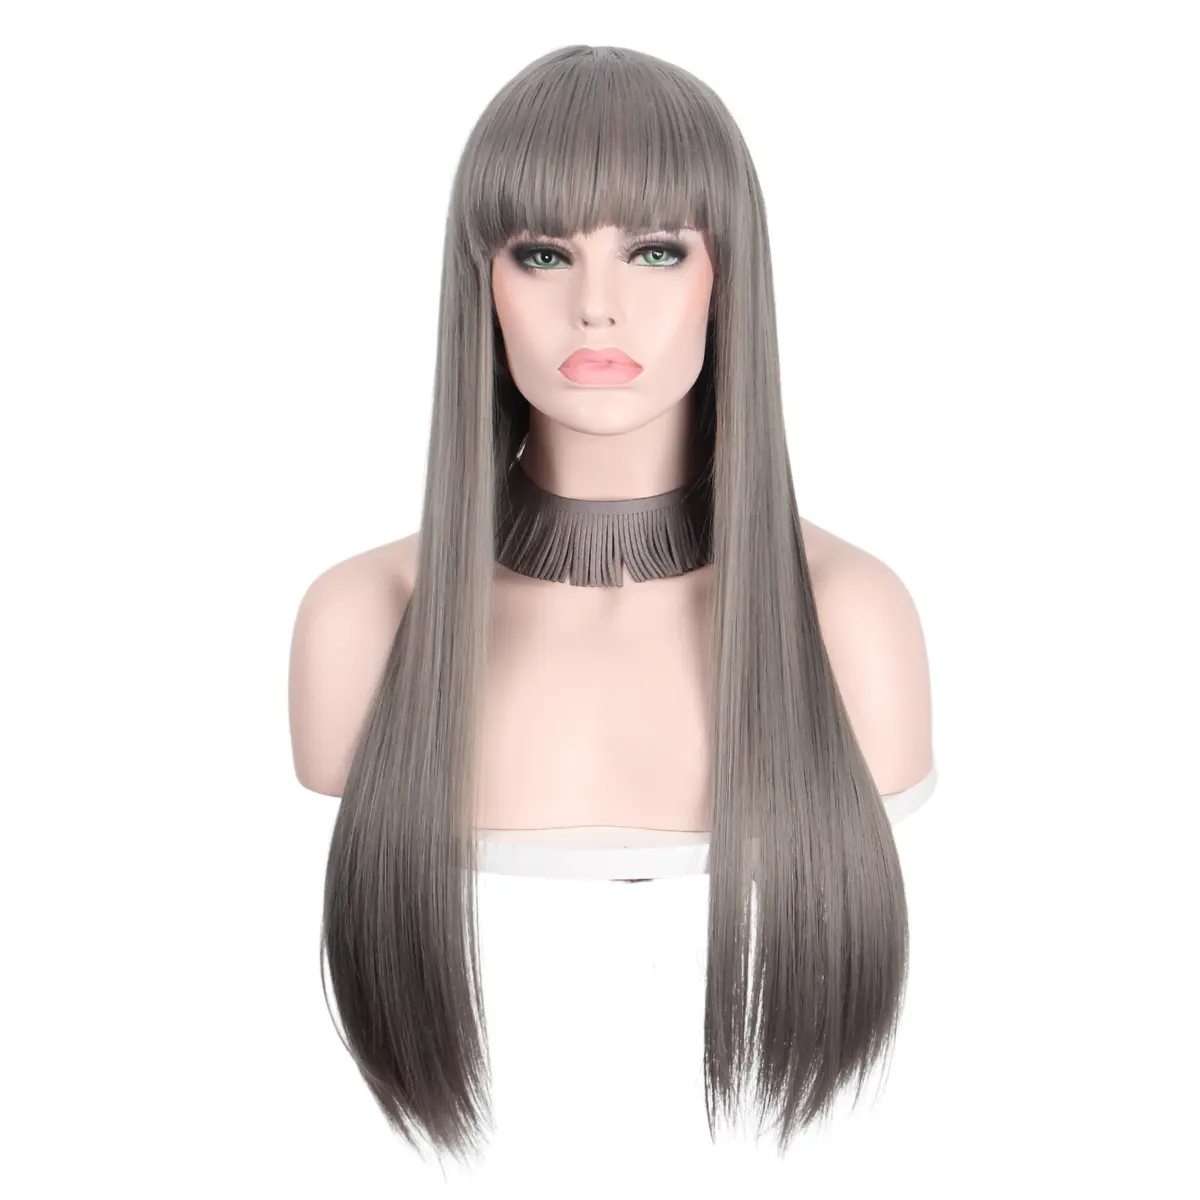 Женский Синтетический прямой парик Anixn, оптовая продажа для косплей-вечеринок с бахромой